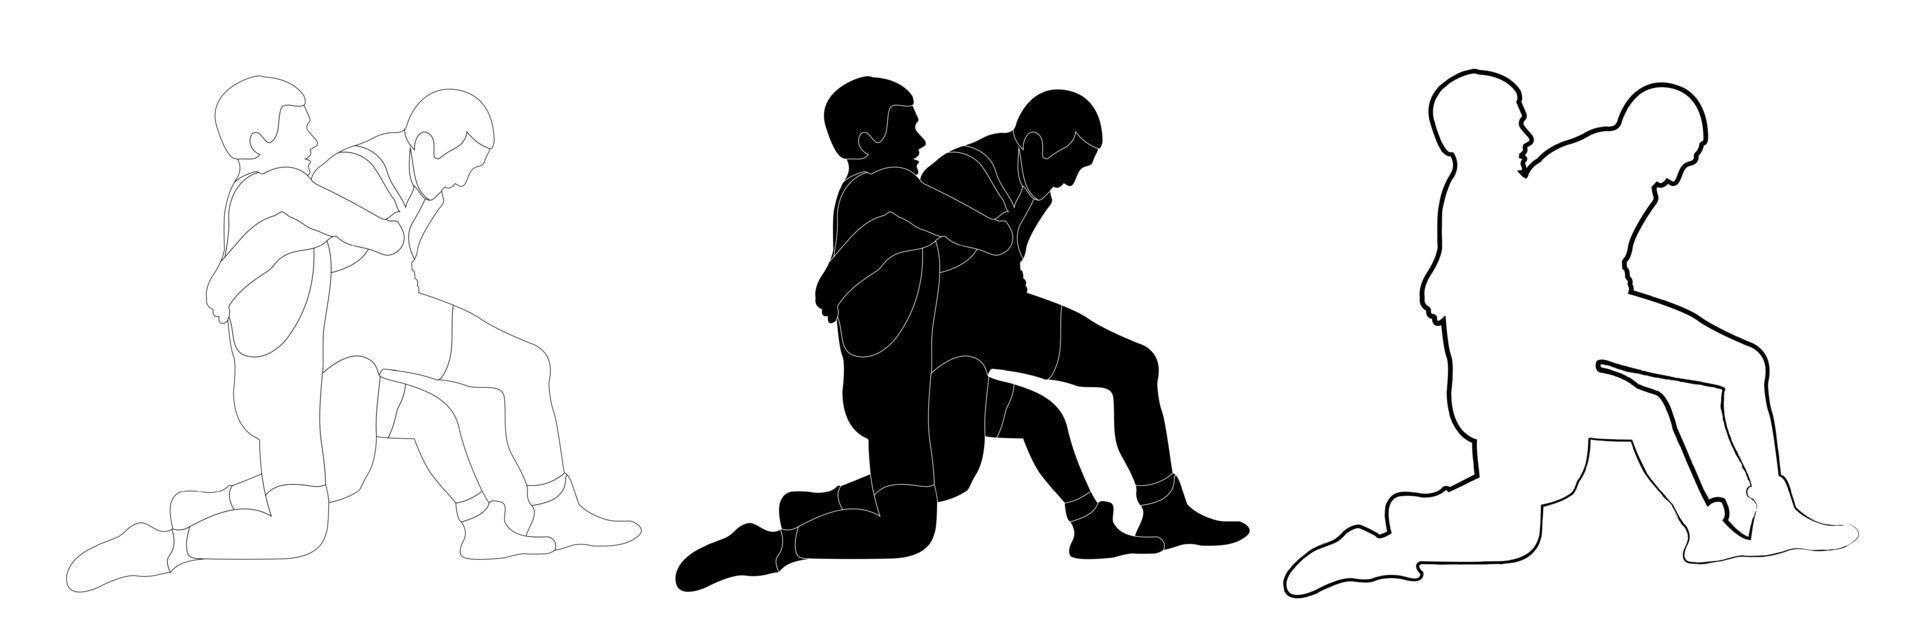 contorno esboço silhueta preto e branco de um atleta de lutador em luta livre, segurando, agarrando. doodle desenho de linha preto e branco. vetor